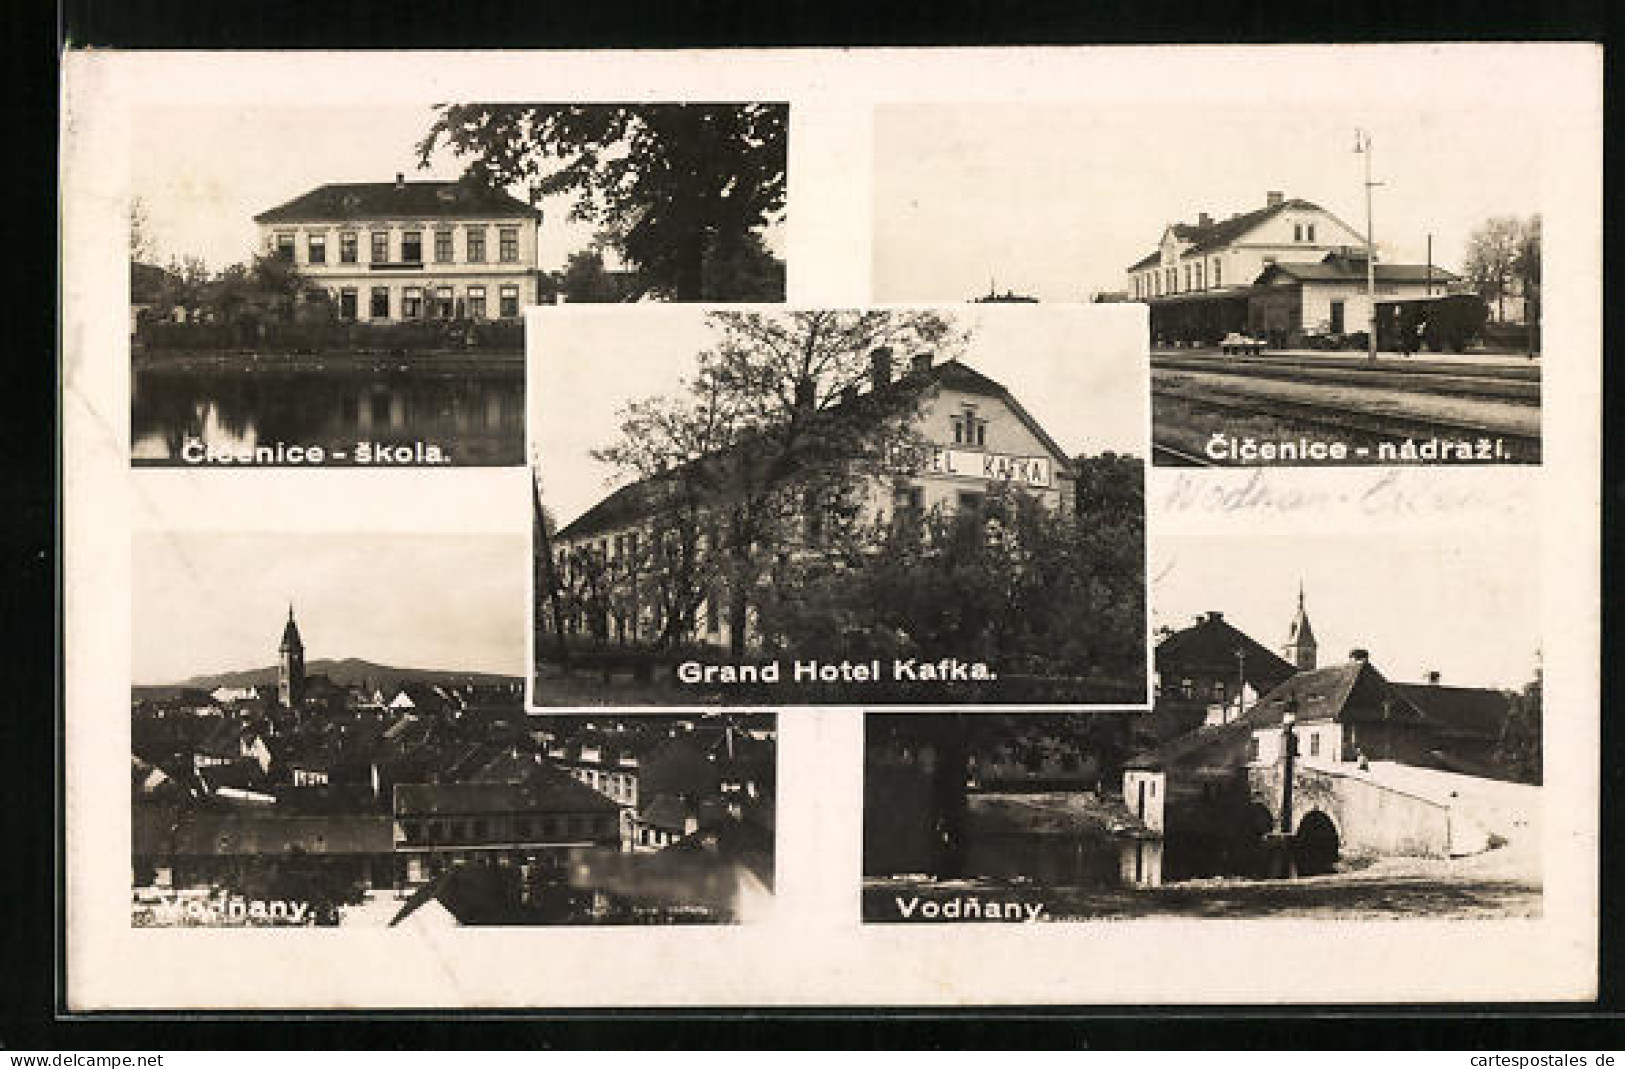 AK Vodnany, Cicenice Nadrazi, Skola, Grand Hotel Kafka  - Tschechische Republik